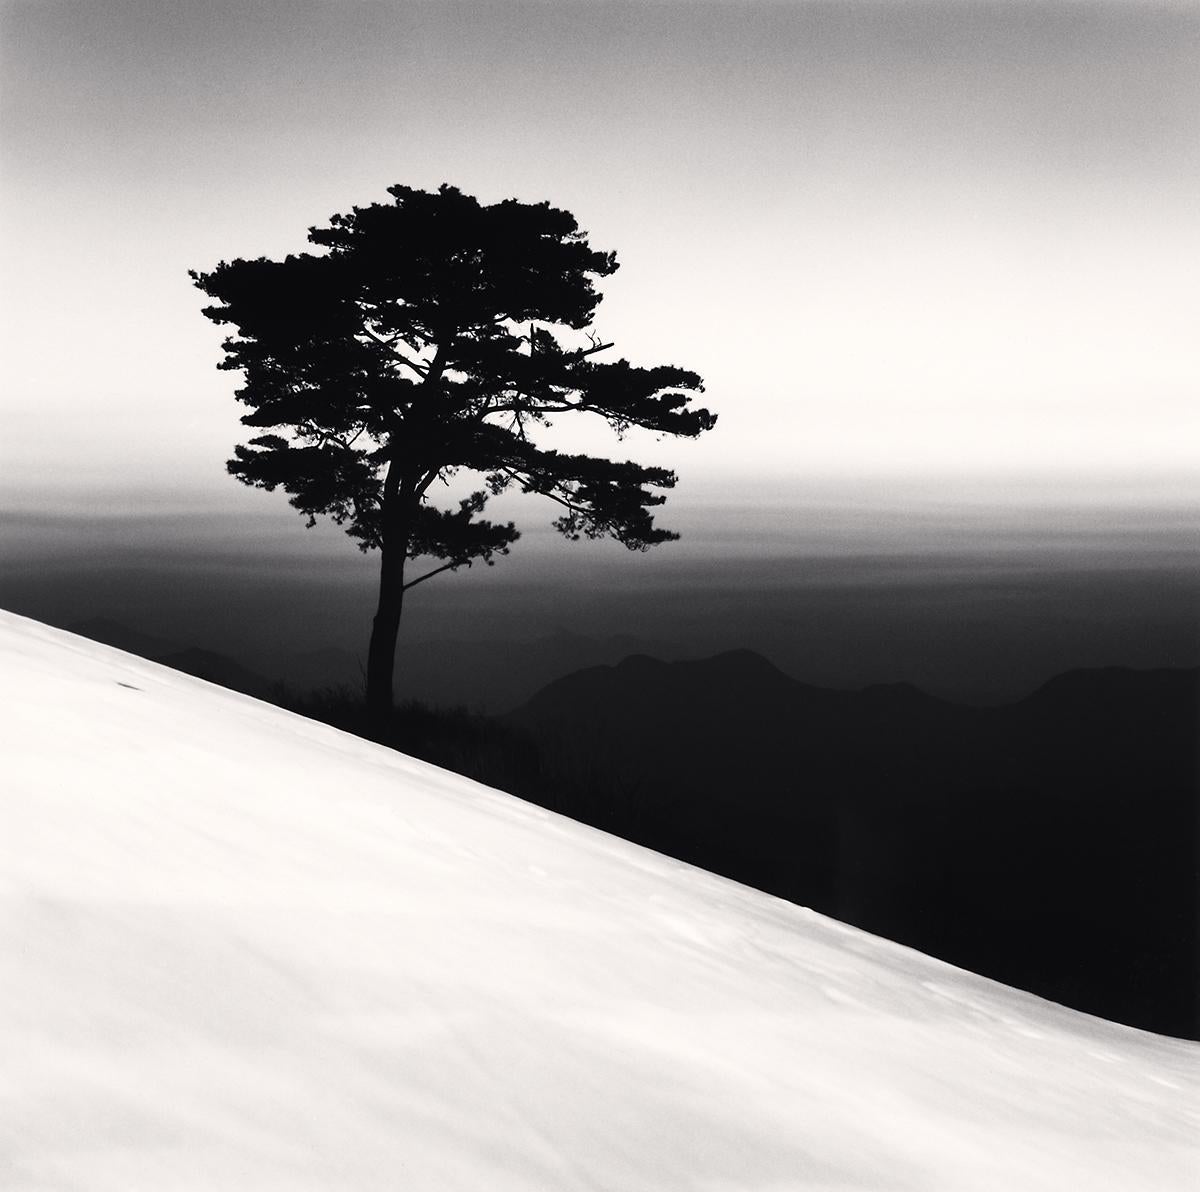 Mountain Tree, Study 1, Danyang, Chungcheongbukdo, Südkorea von Michael Kenna zeigt eine erhabene Szene. Ein einzelner Baum steht hoch und wächst aus dem Berg heraus. Der strahlend weiße Schnee kontrastiert mit der dunklen Atmosphäre in der Ferne.